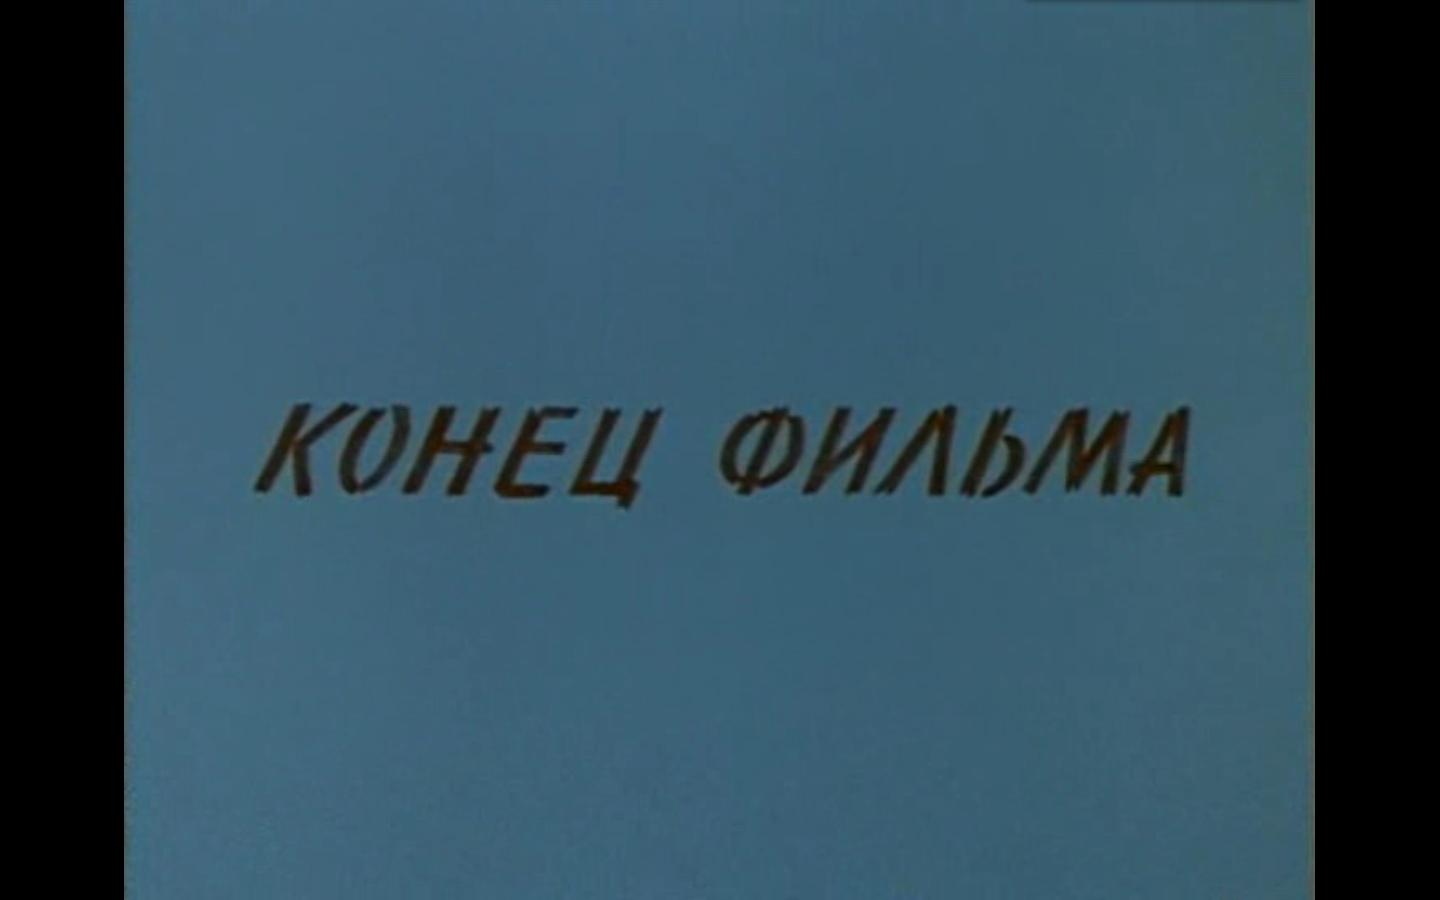 Kommunist (1958) Screenshot 1 